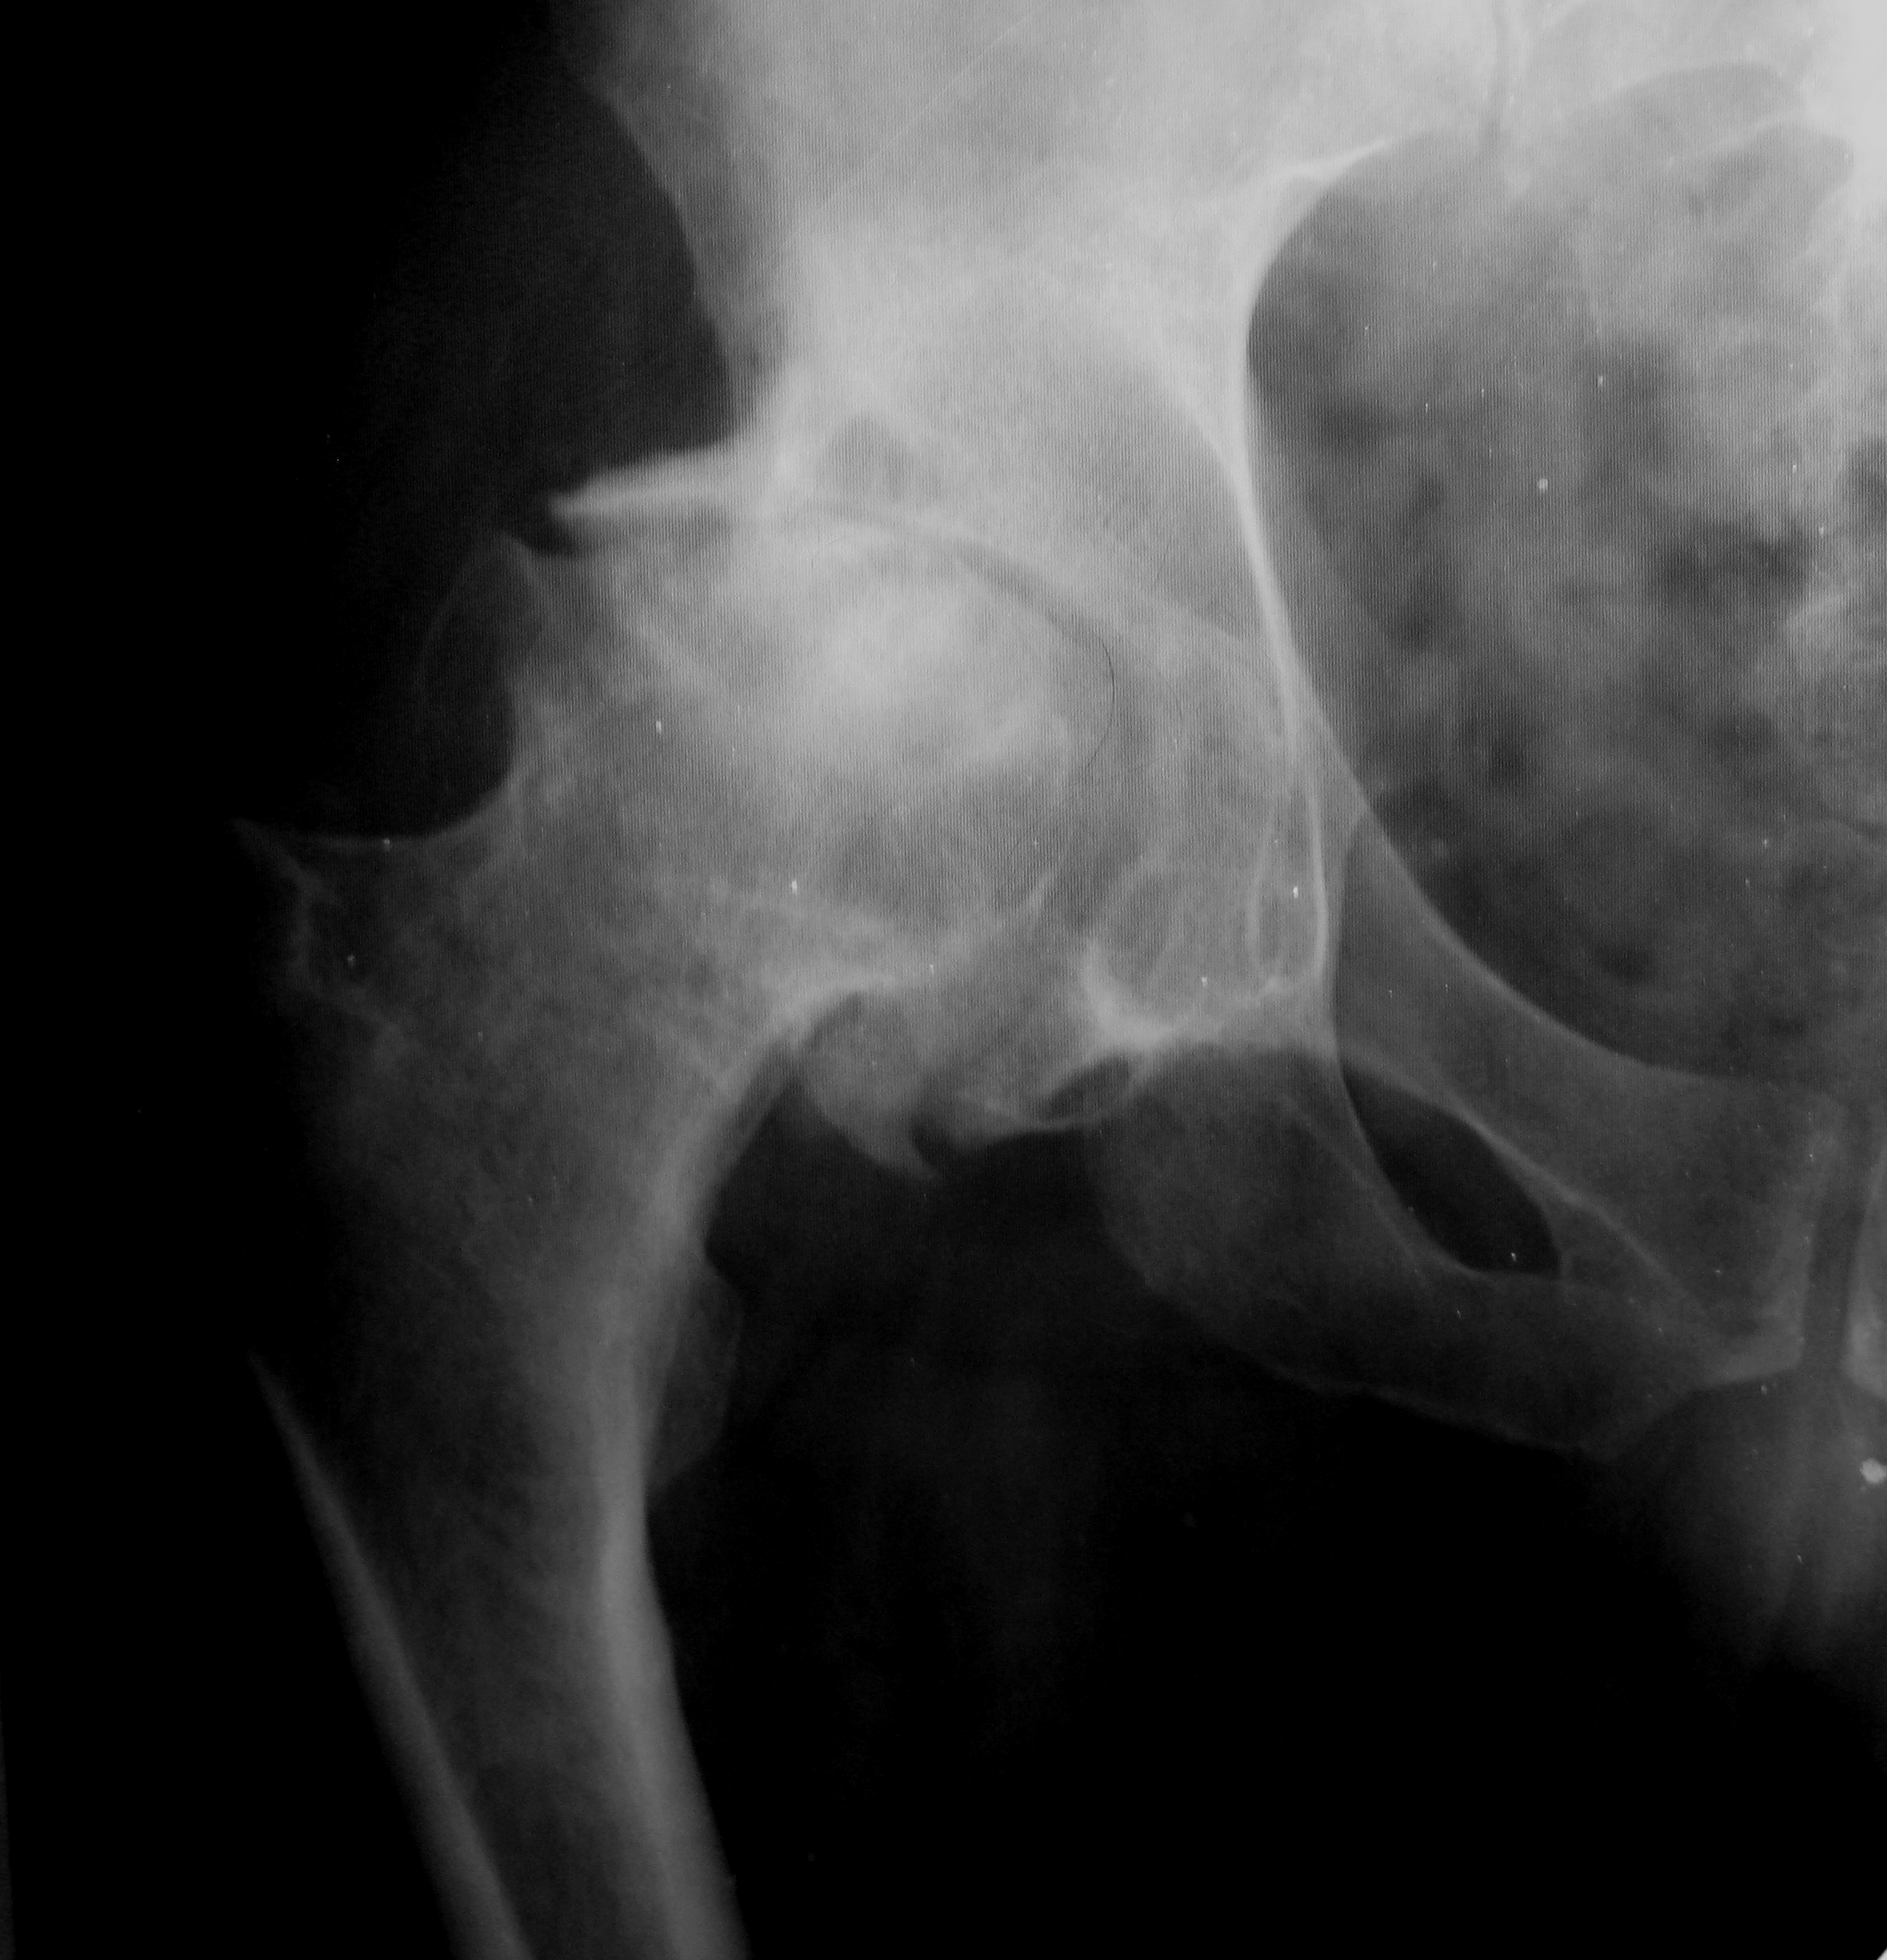 Патология тазобедренного сустава. Остеосклероз тазобедренного сустава рентген. Остеофиты головки бедренной кости. Очаговый остеосклероз бедренной кости. Остеопороз тазобедренного сустава рентген.